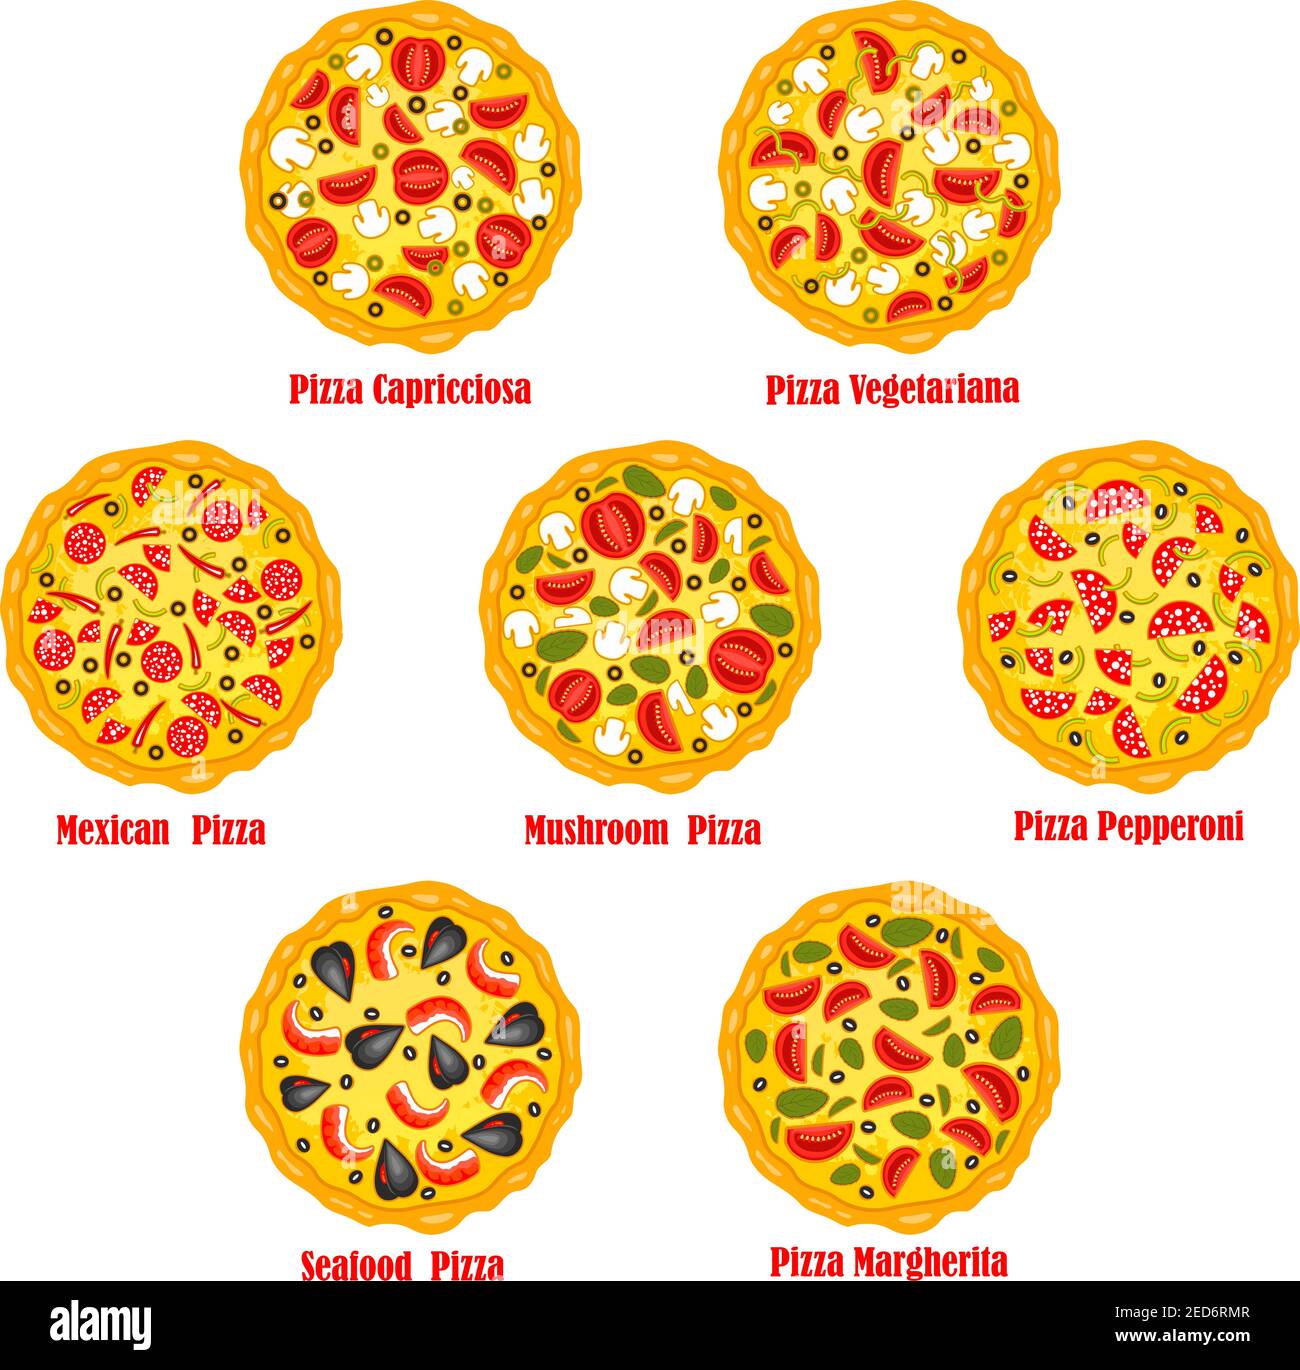 схема приготовления пиццы пепперони фото 72